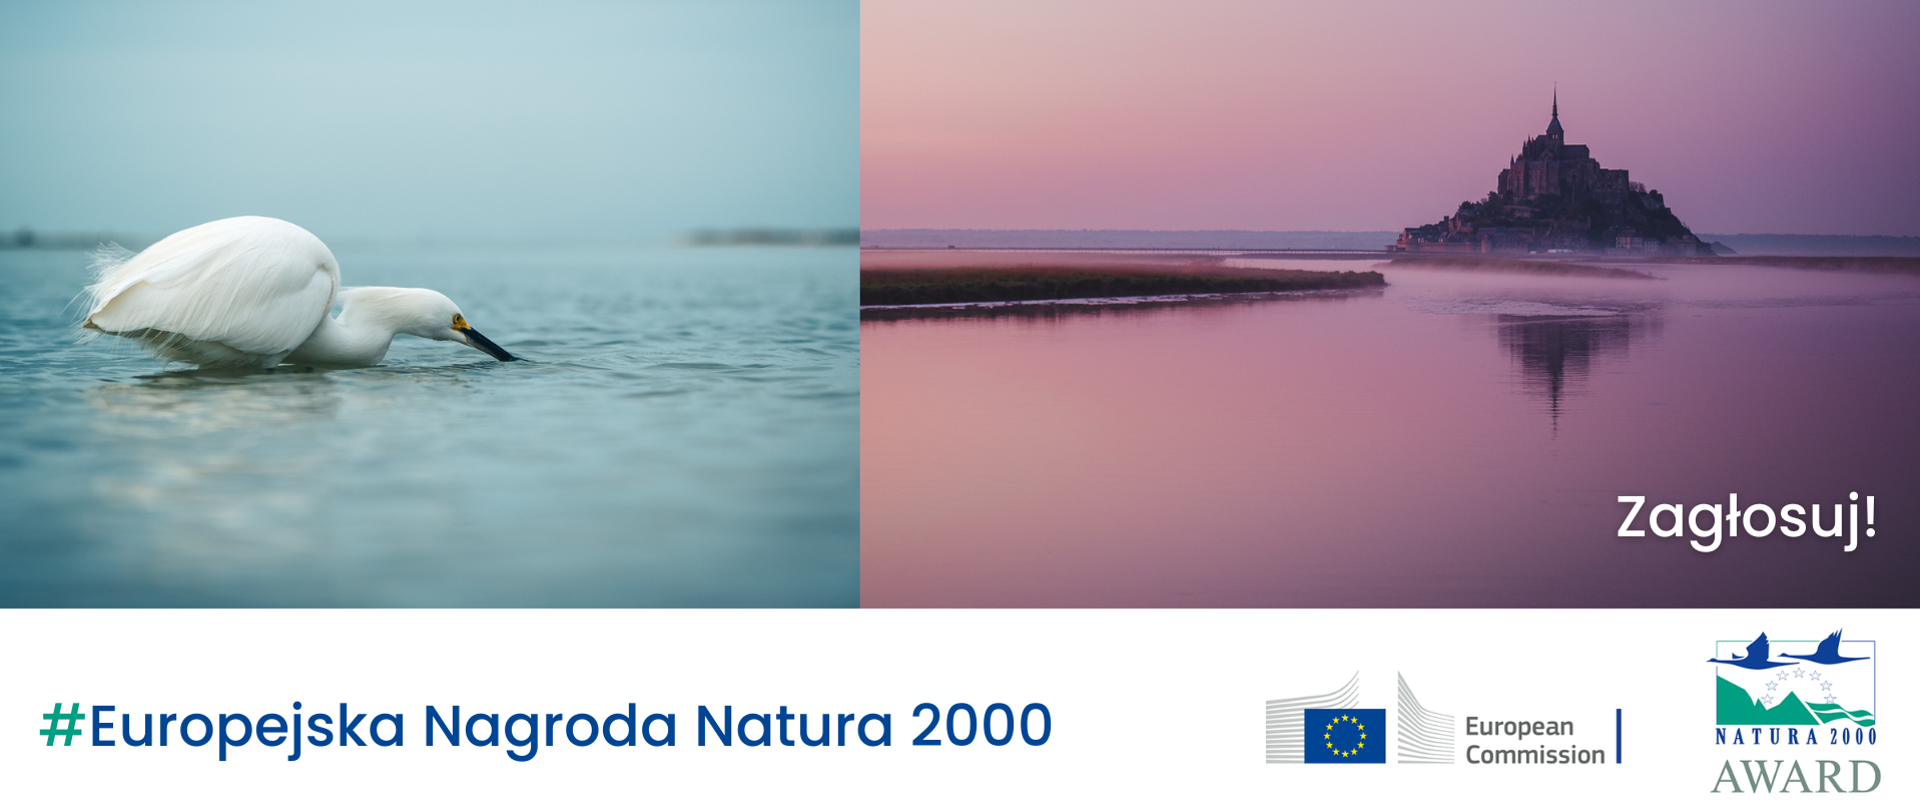 Dwa zdjęcia zestawione ze sobą. Na jednym biały ptak na wodzie, na drugim krajobraz z budowlą typu zamek i napis: Zagłosuj!
Na dole napis #Europejska Nagroda Natura 2000 i dwa logotypy: Komisji Europejskiej i Europejskiej Nagrody Natura 2000.